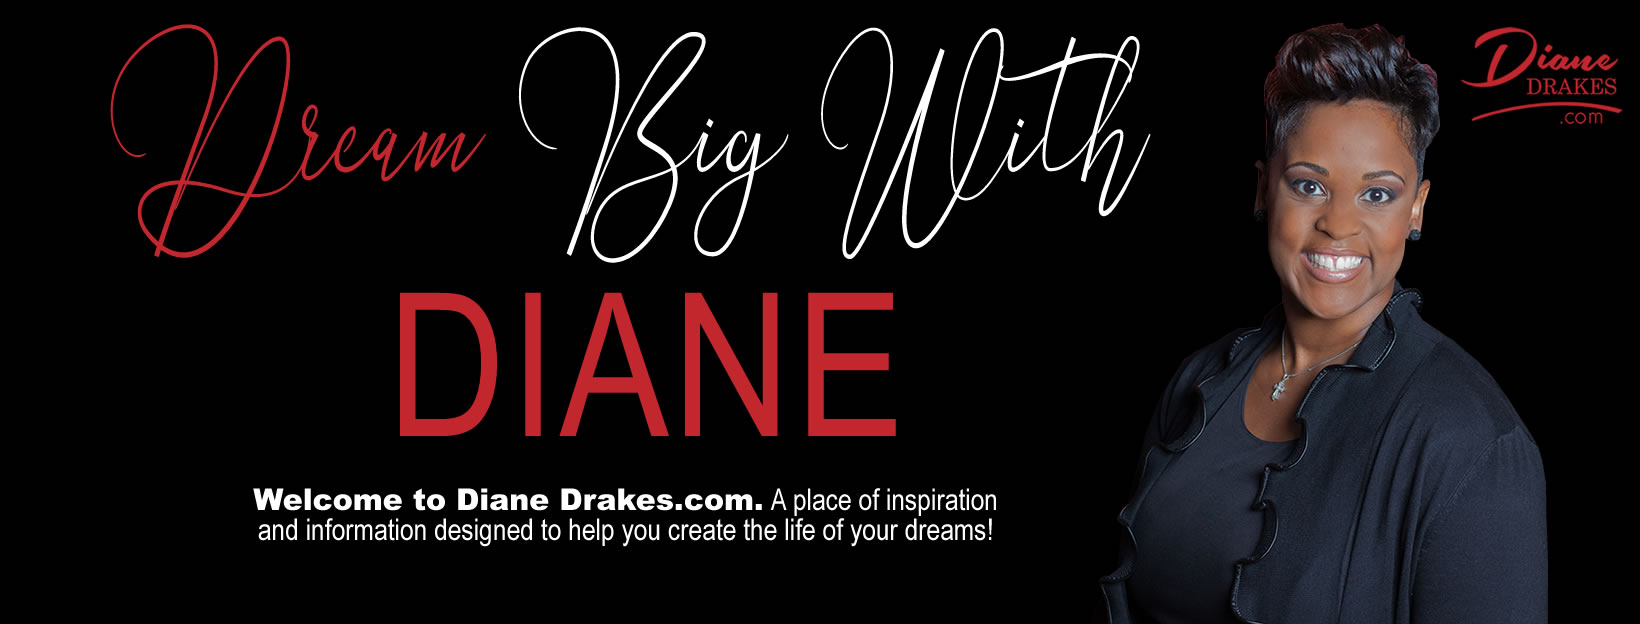 Diane Drakes Website Banner_2